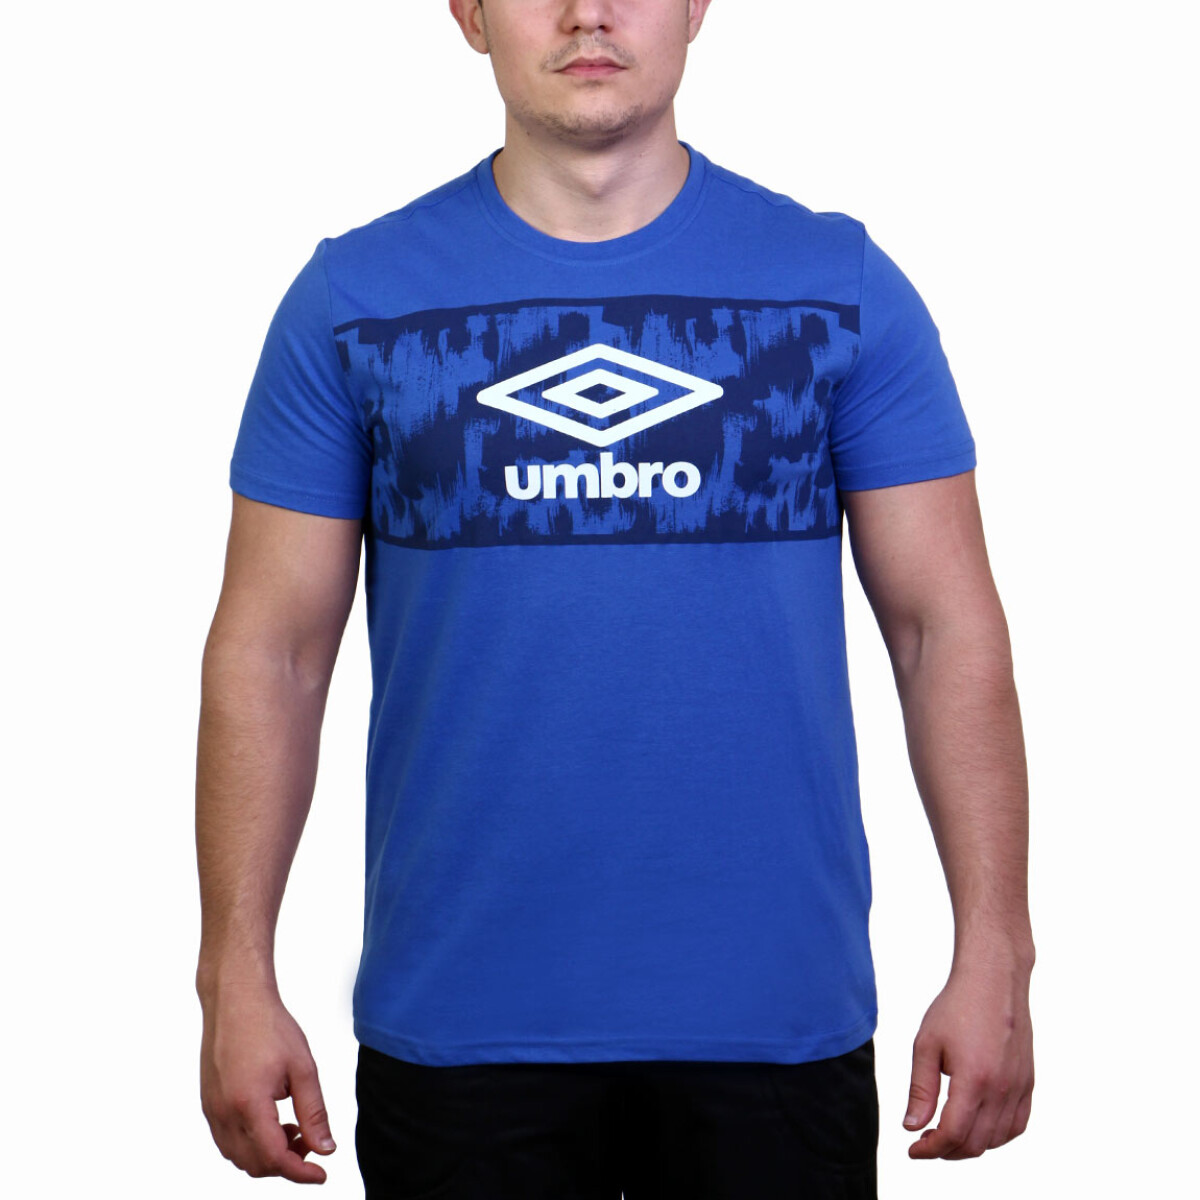 Umbro T-shirt Stripe Hombre M/c - Azul 